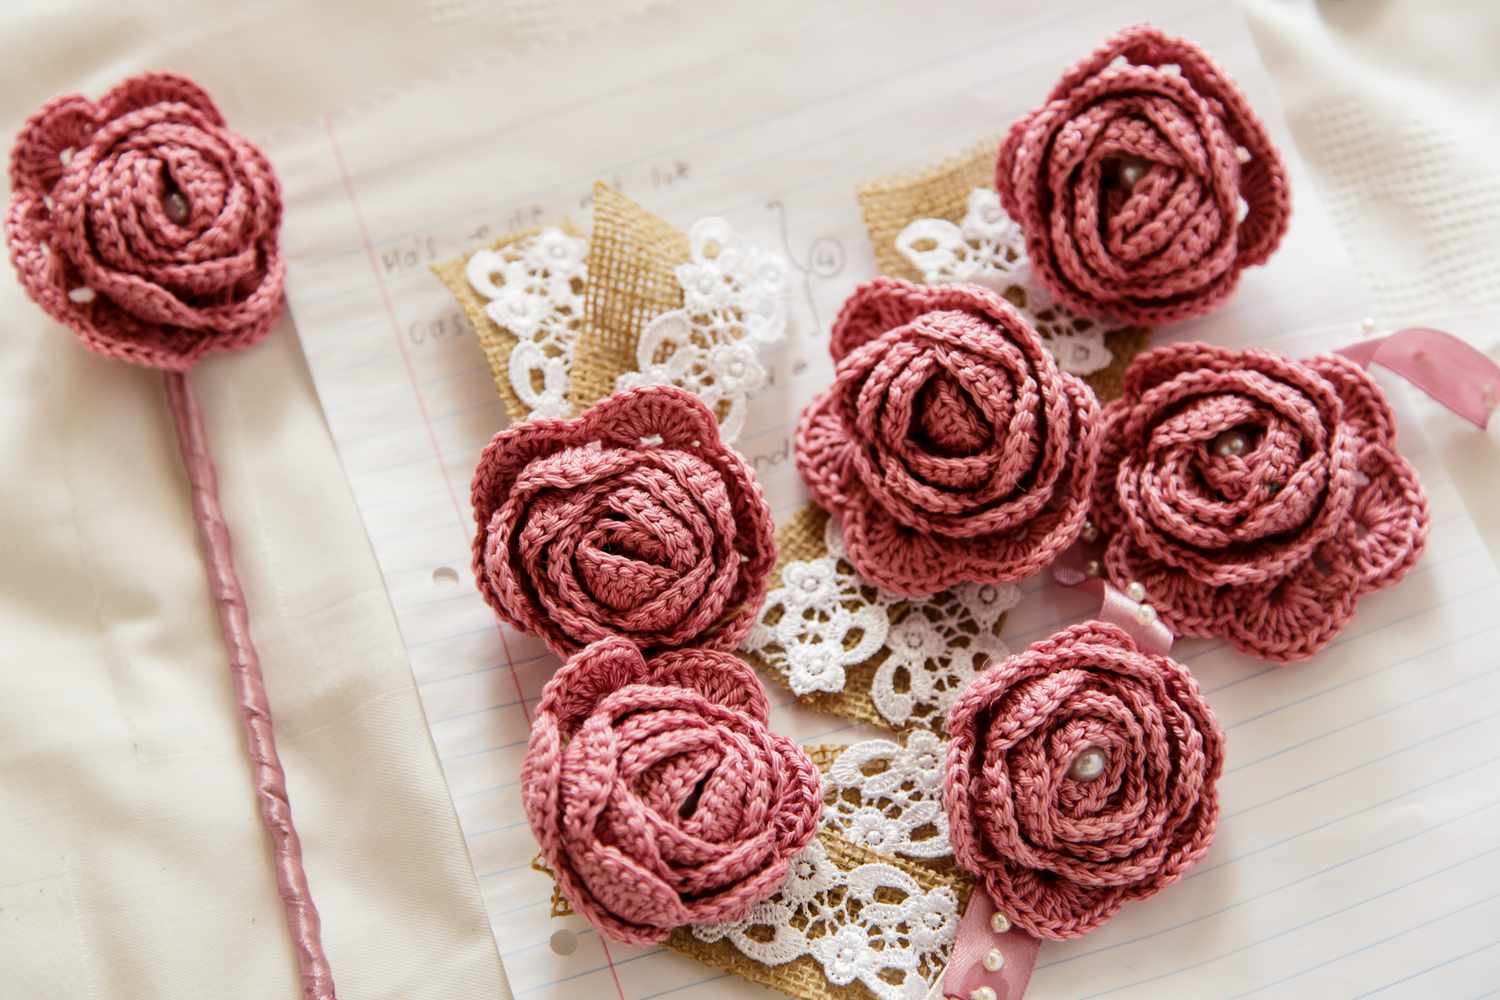 10 Unique Ways To Use A Crochet Rose Bouquet – You Won’t Believe #7!